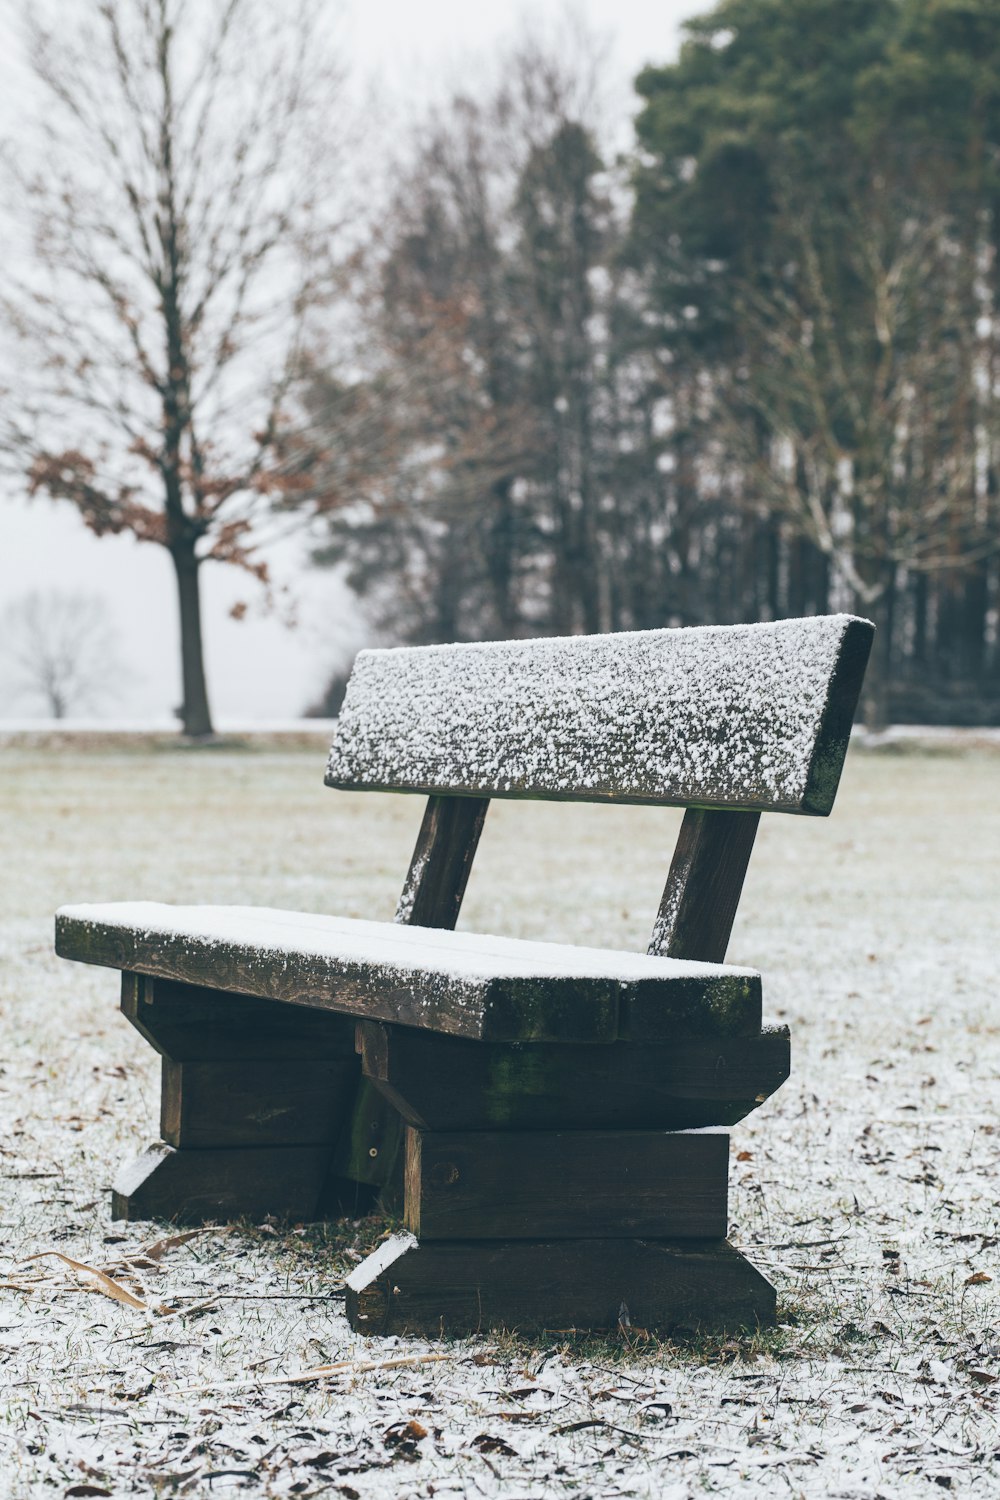 Un banco sentado en medio de un campo cubierto de nieve